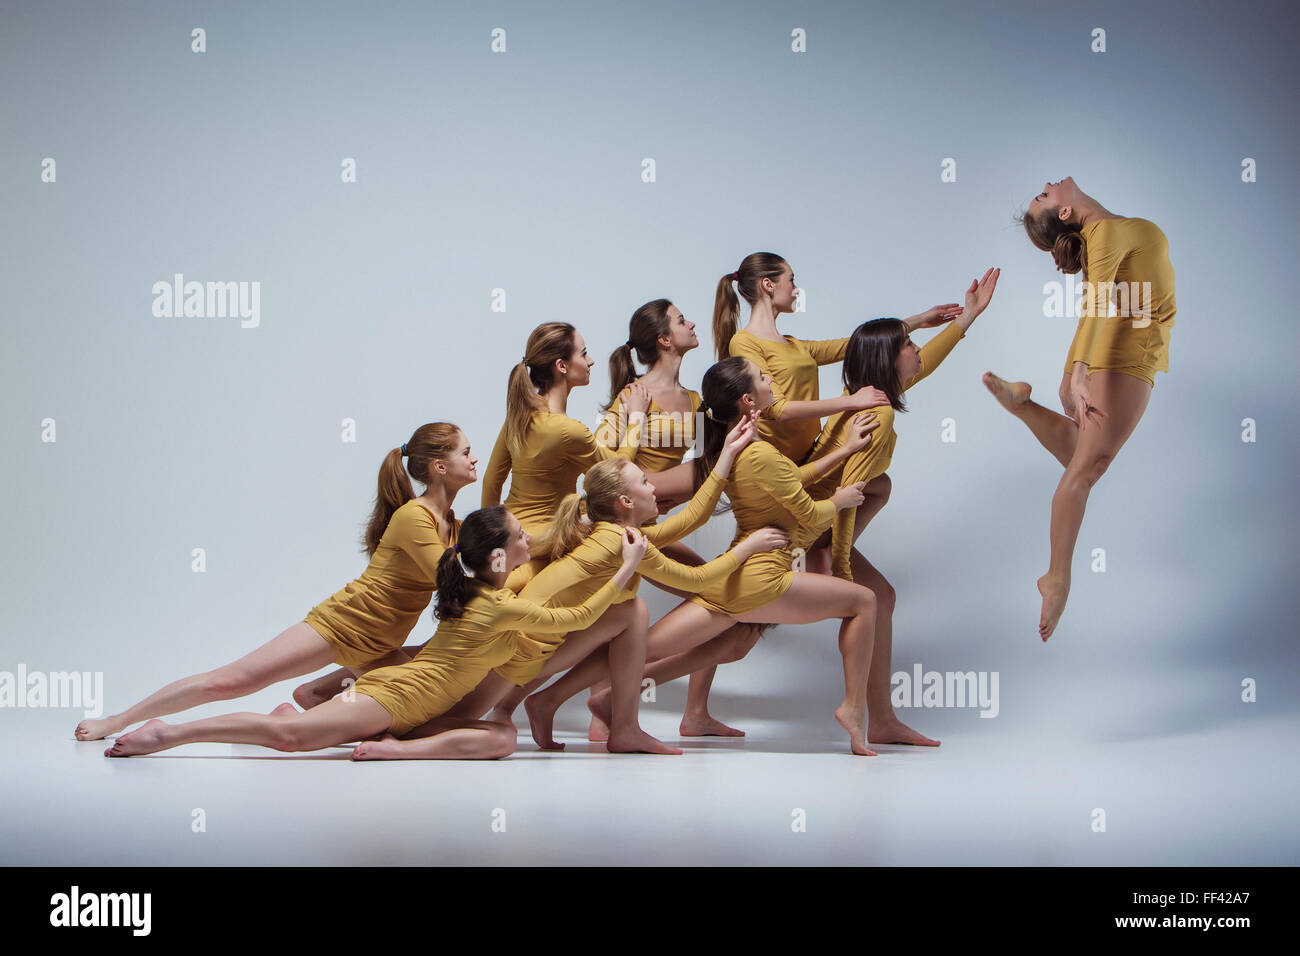 Танец группой людей. Современный танец Модерн. Современный балет Модерн. Позы для танца. Танцы групповые современные.